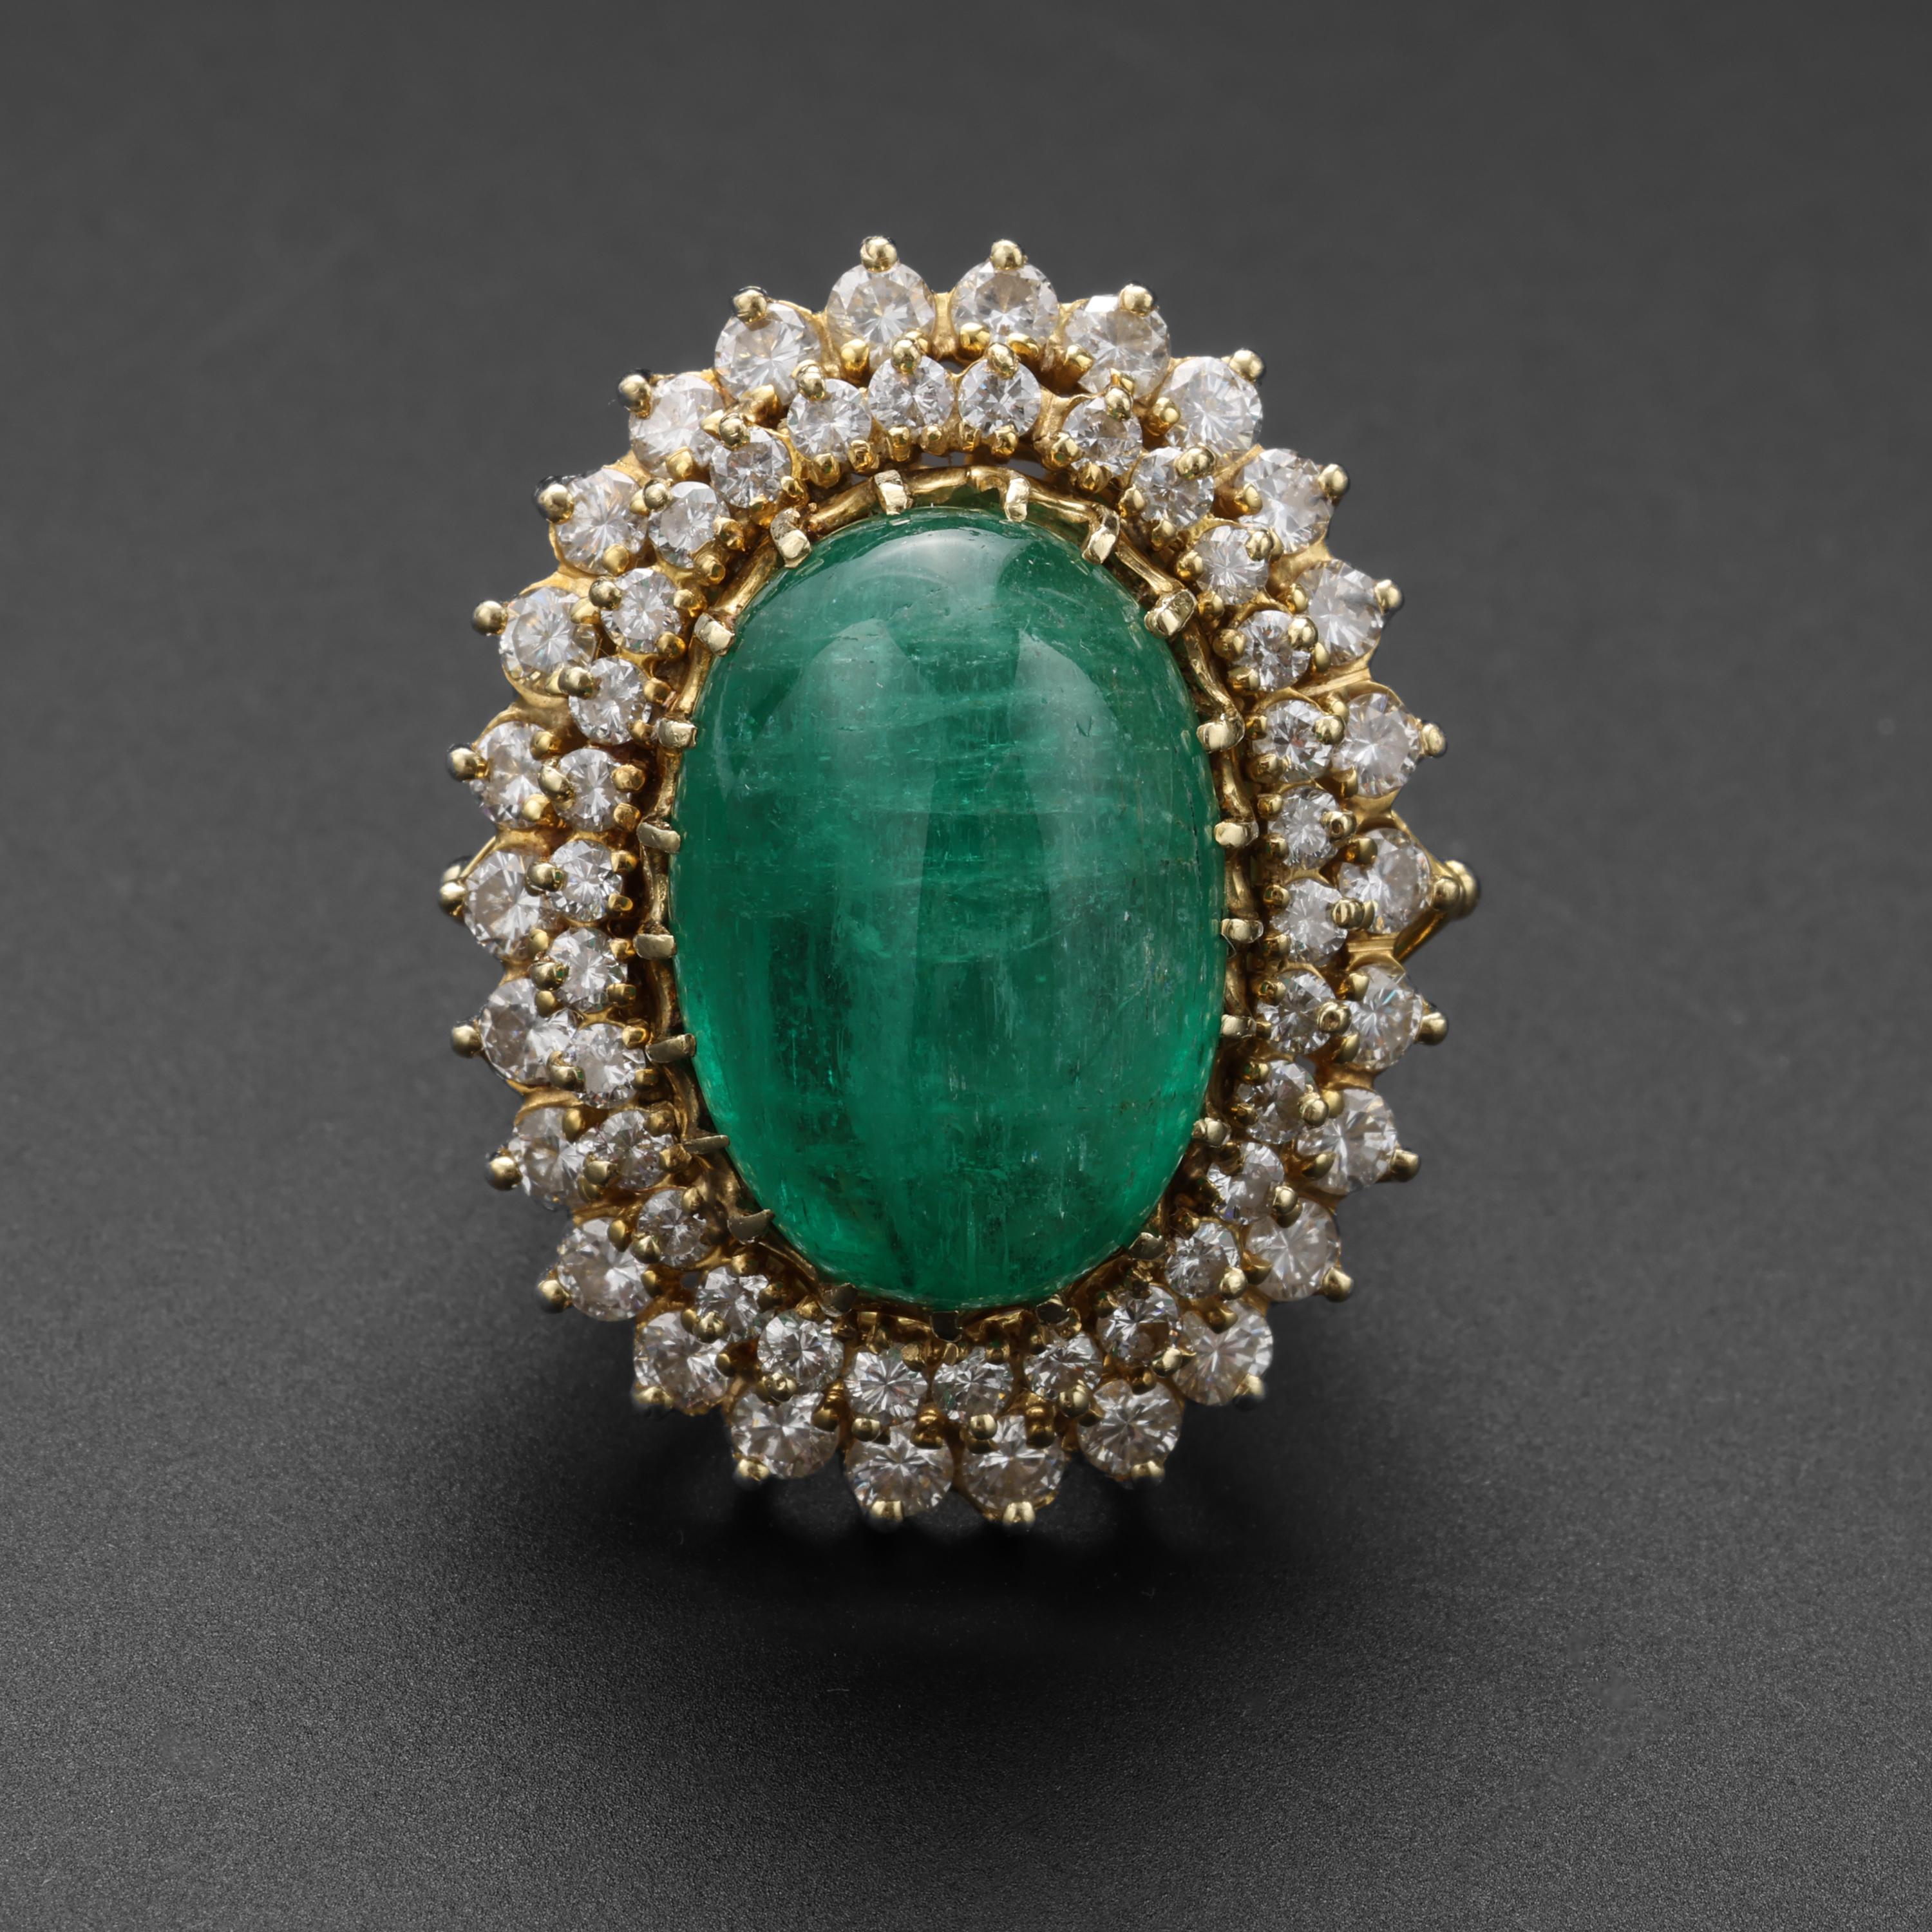 Ein spektakuläres und seltenes Juwel, das eines königlichen Fingers würdig ist! Dieser prächtige, in den 1950er Jahren handgefertigte Ring aus 14-karätigem Gelbgold enthält einen massiven, leuchtenden, transparenten, lebhaft grünen Natursmaragd aus